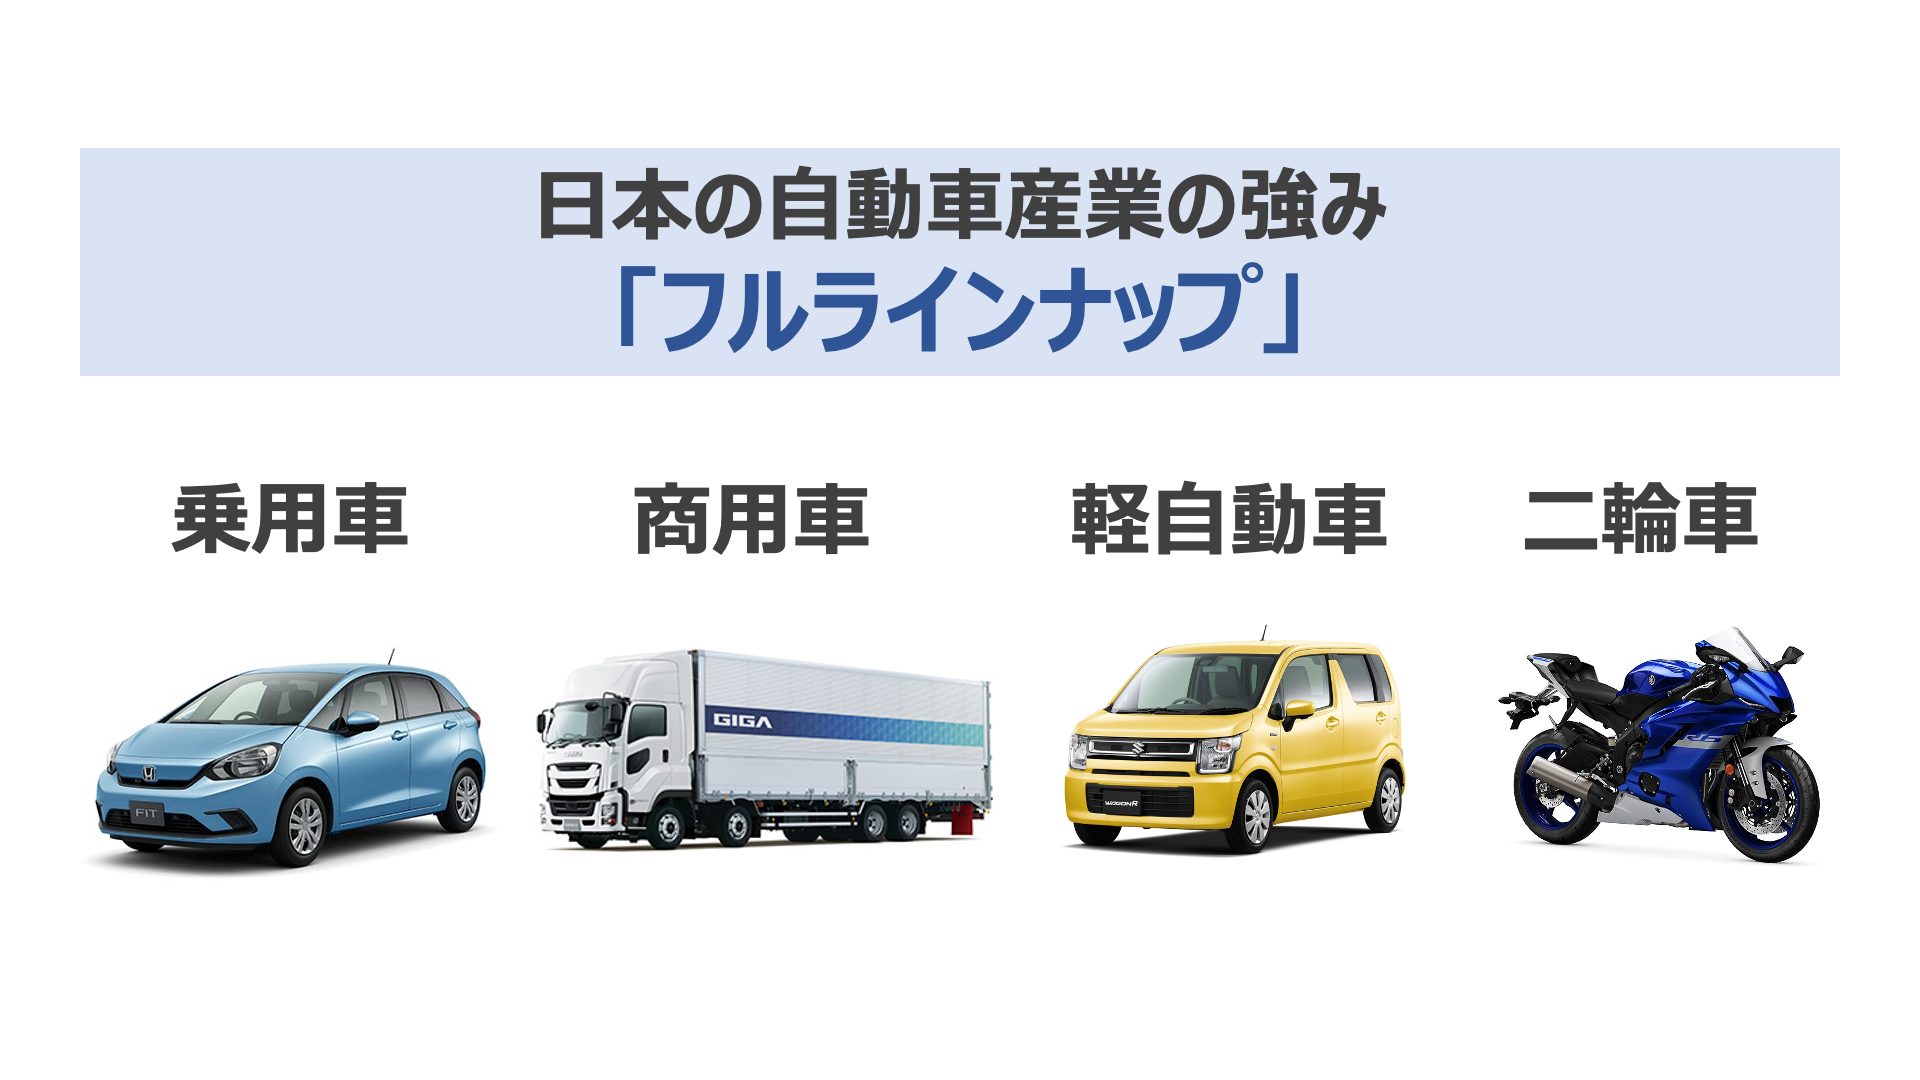 日本の自動車産業の強み「フルラインナップ」